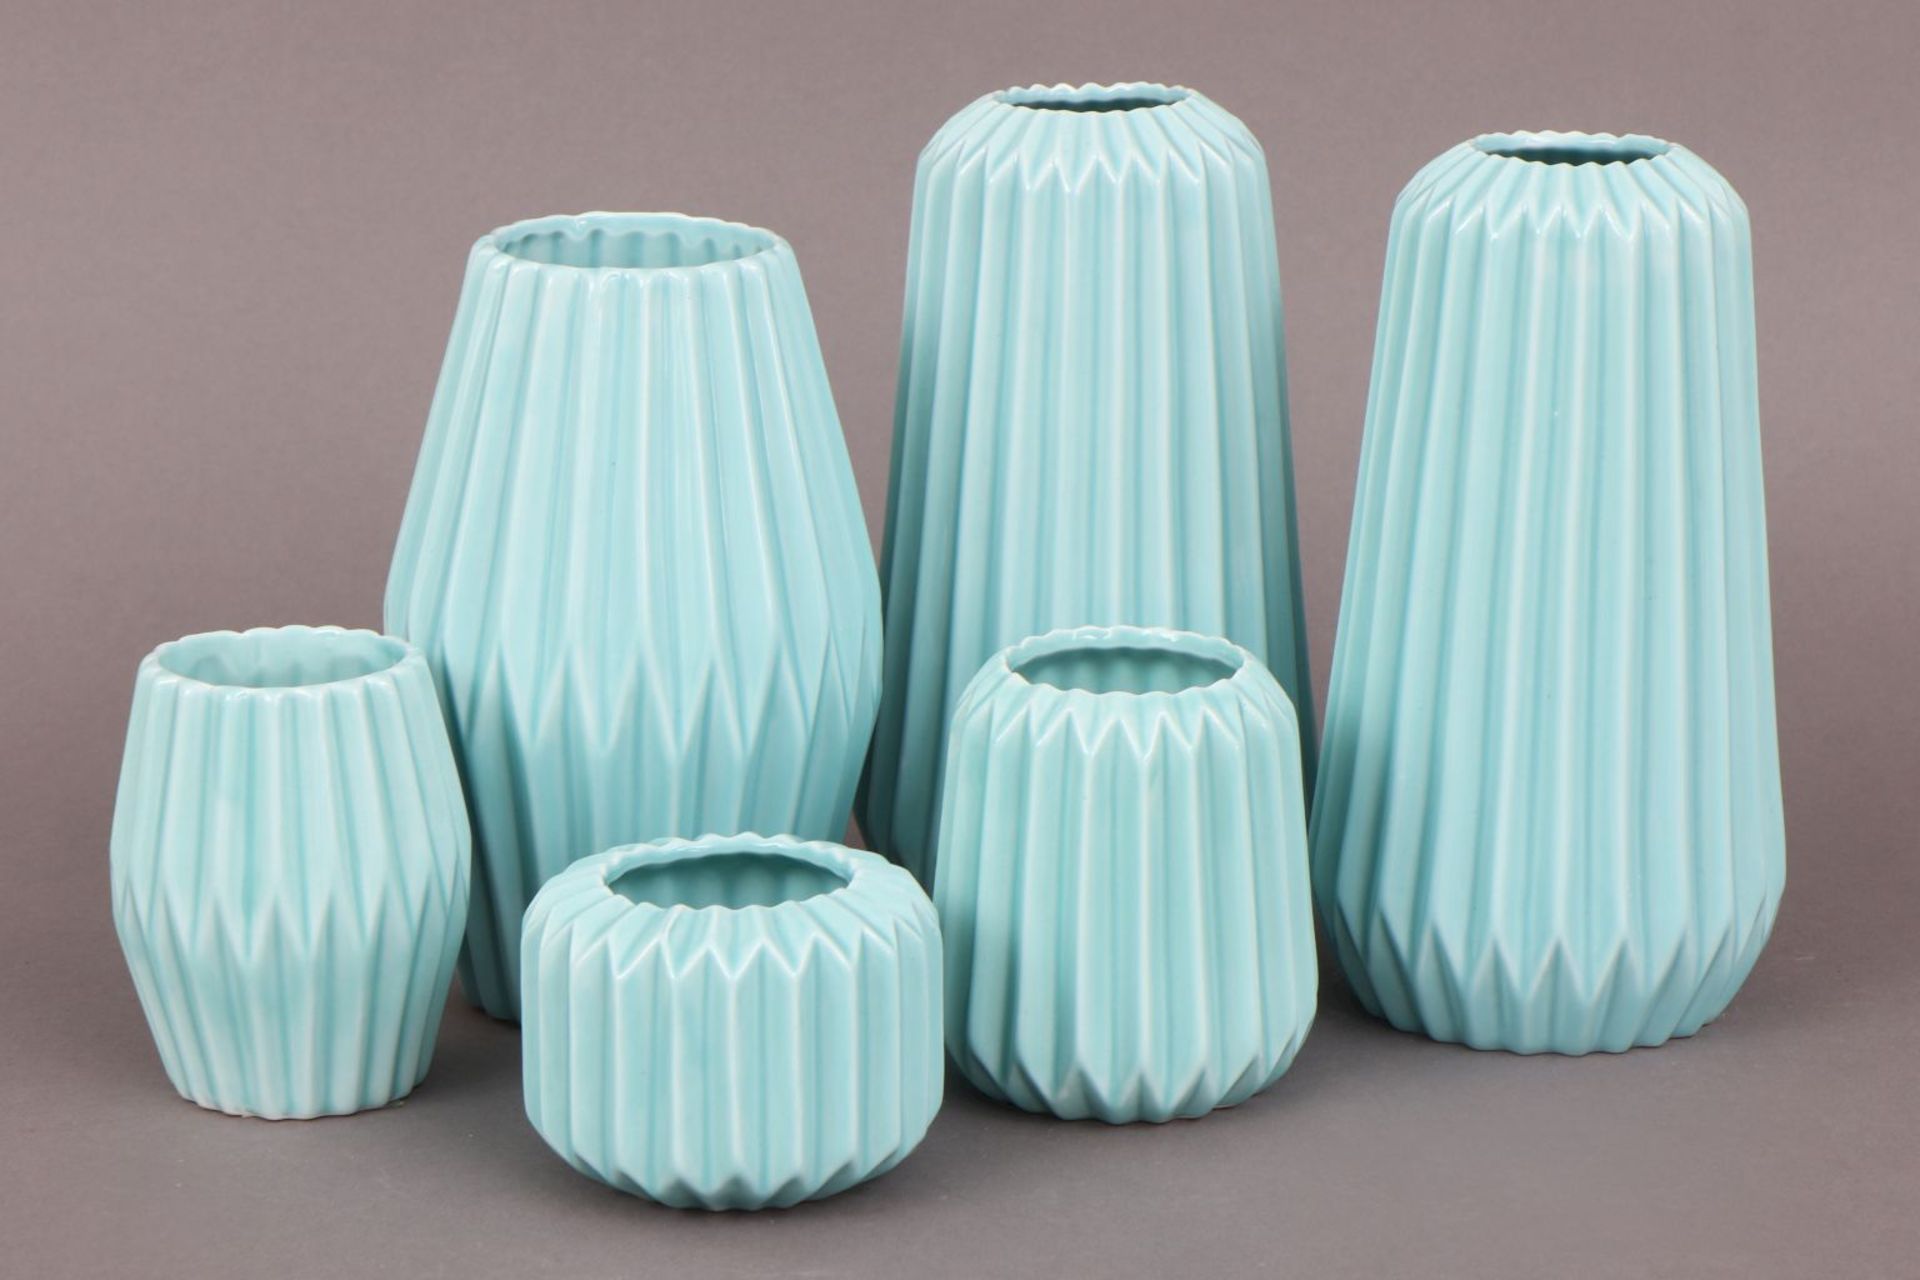 6 BLOOMINGVILLE Vasen im skandinavischen Mid-century StilPorzellan, mintgrün glasiert, diverse